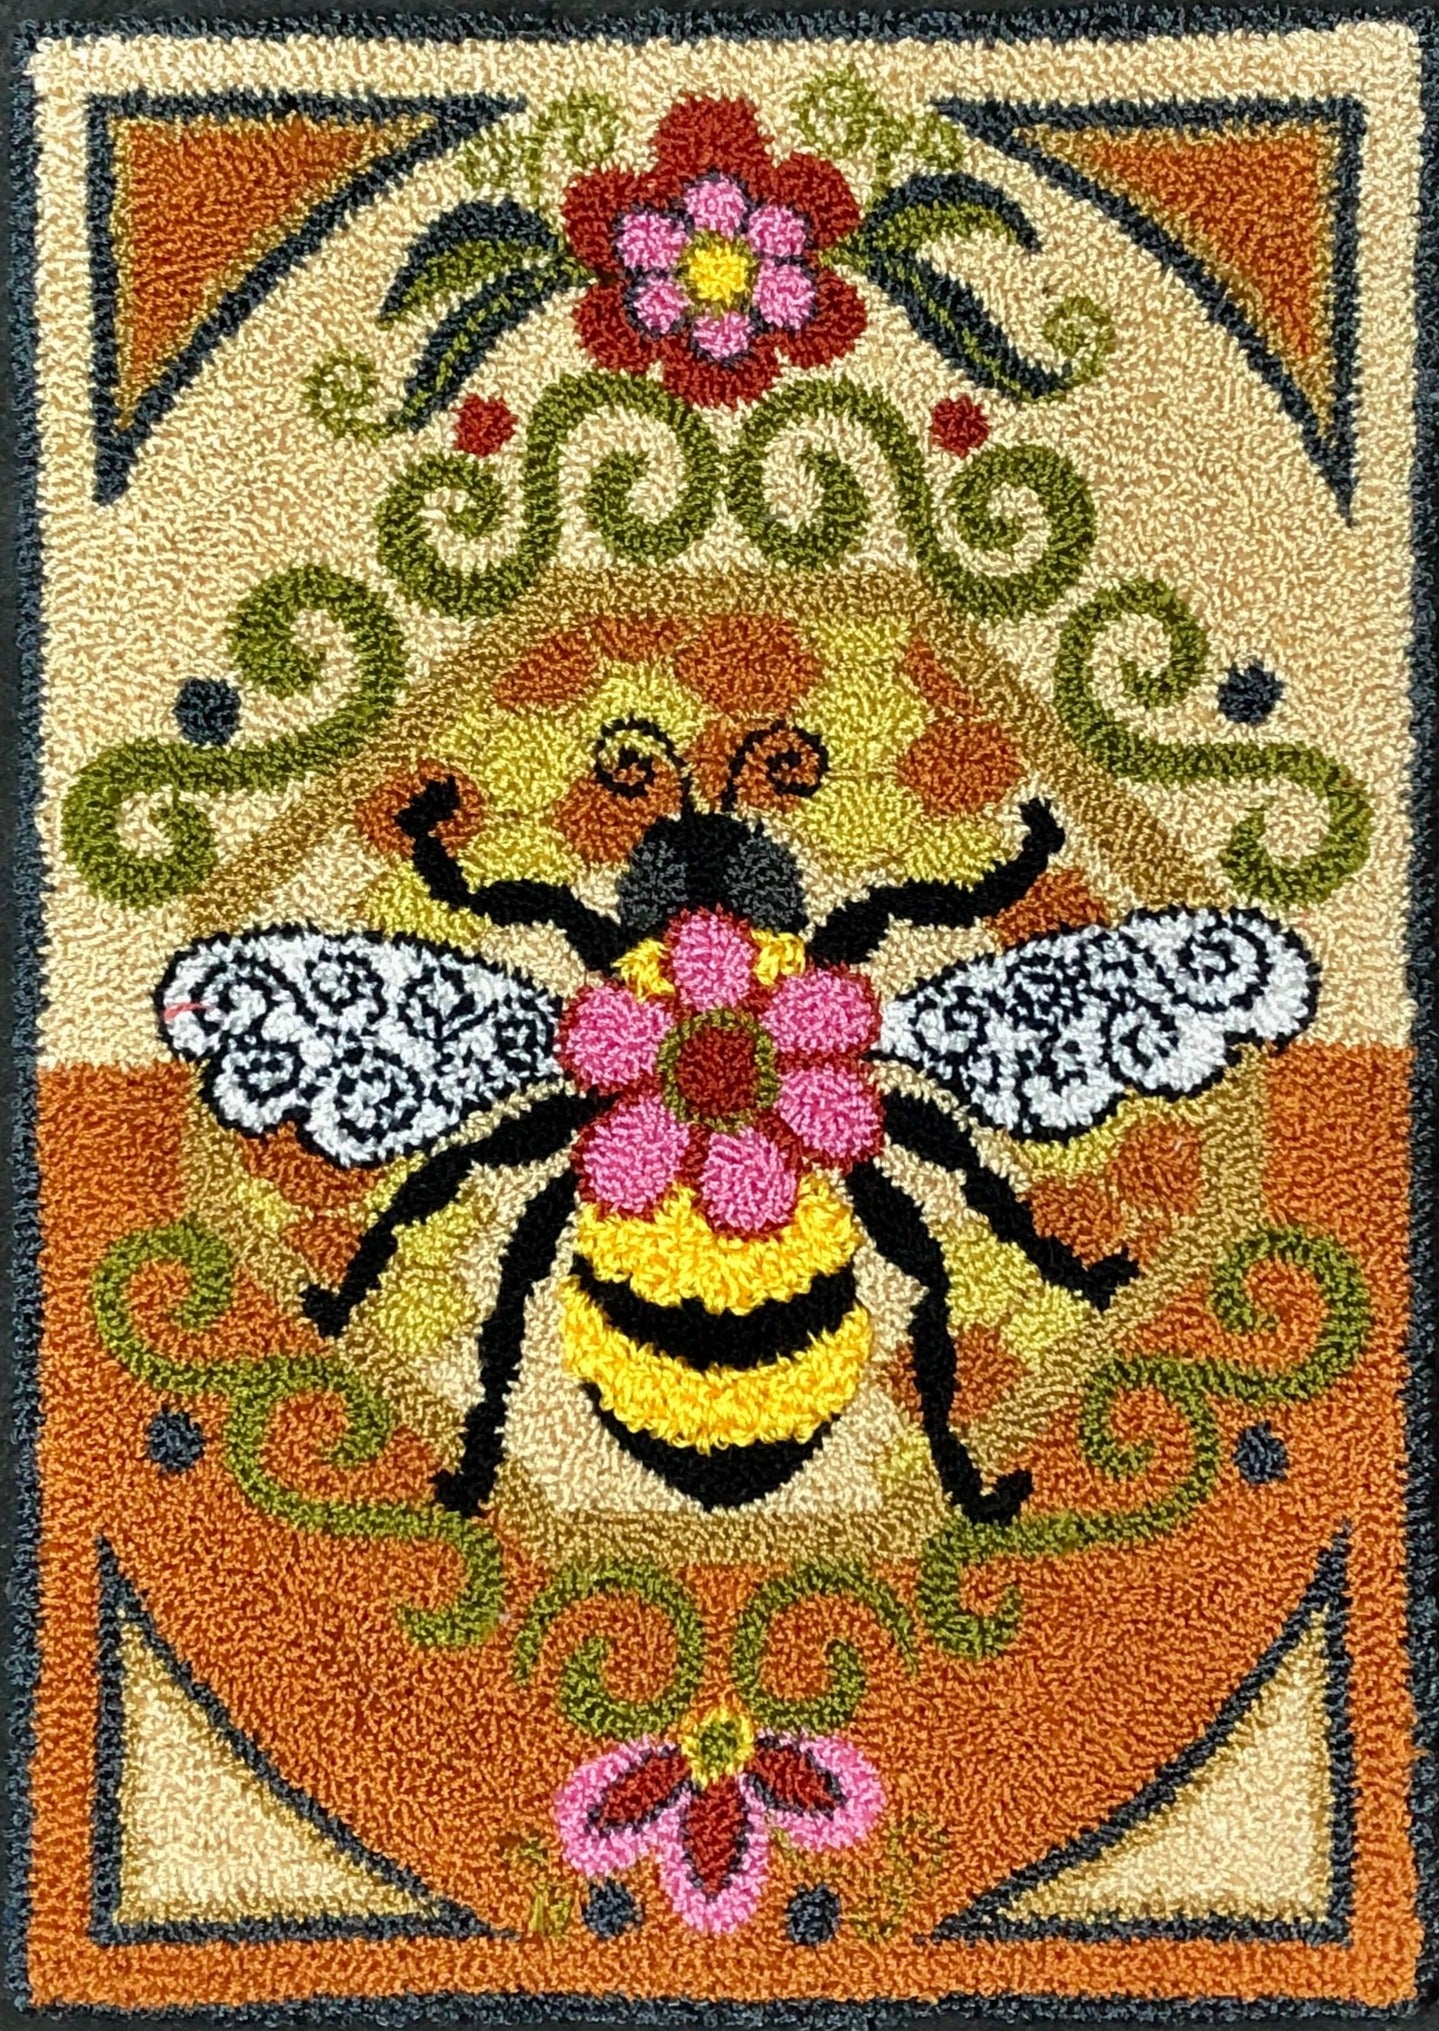  Bumblebee Paper Rug Hooking Pattern by Orphaned Wool